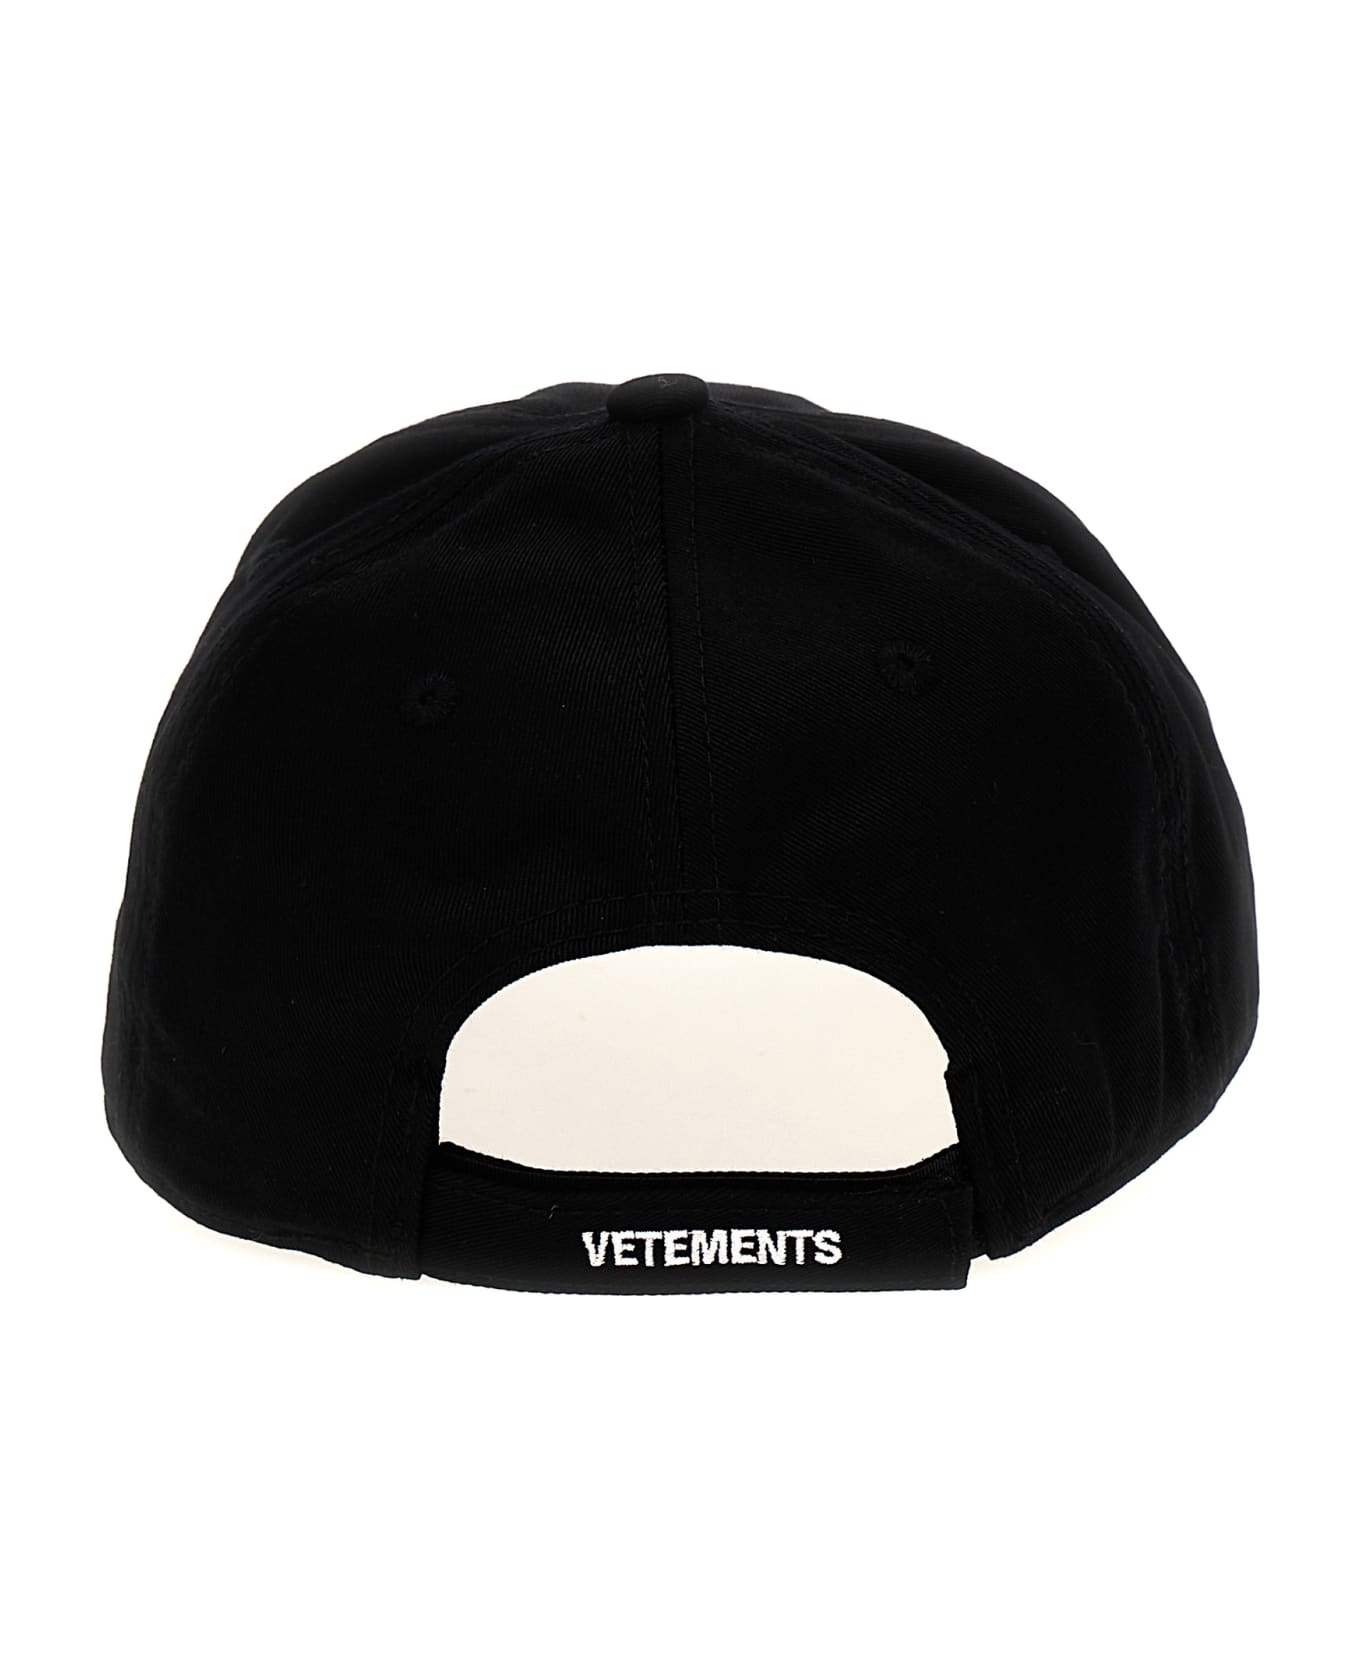 VETEMENTS 'anarchy' Cap - White/Black 帽子